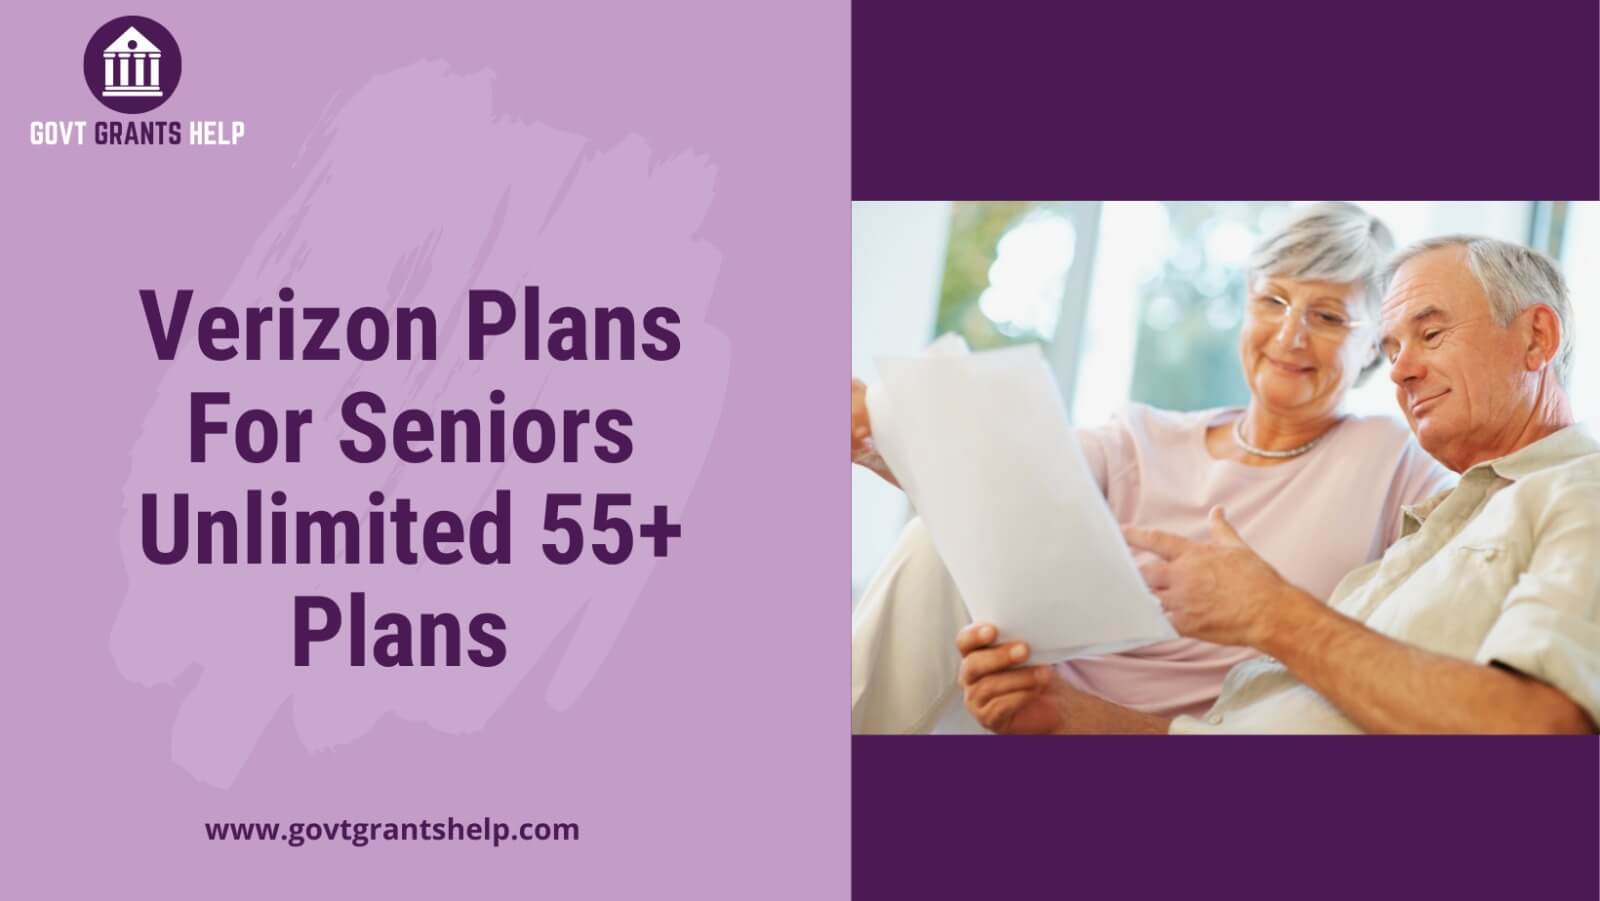 Verizon Cell Phone Plans For Seniors Unlimited 55+ Plans Govt